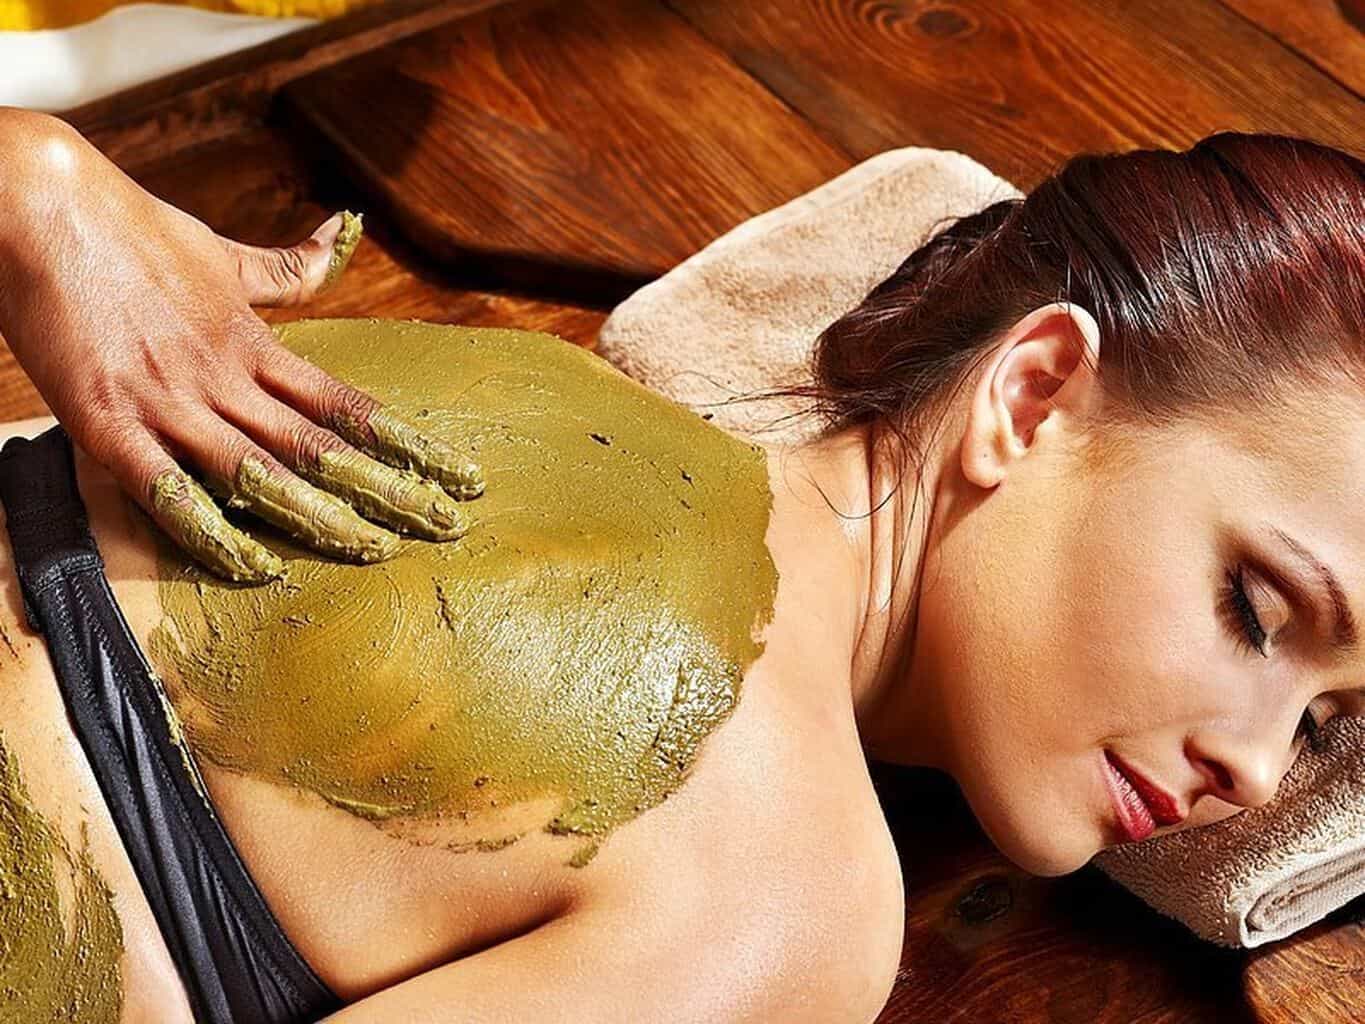 a woman being massaged